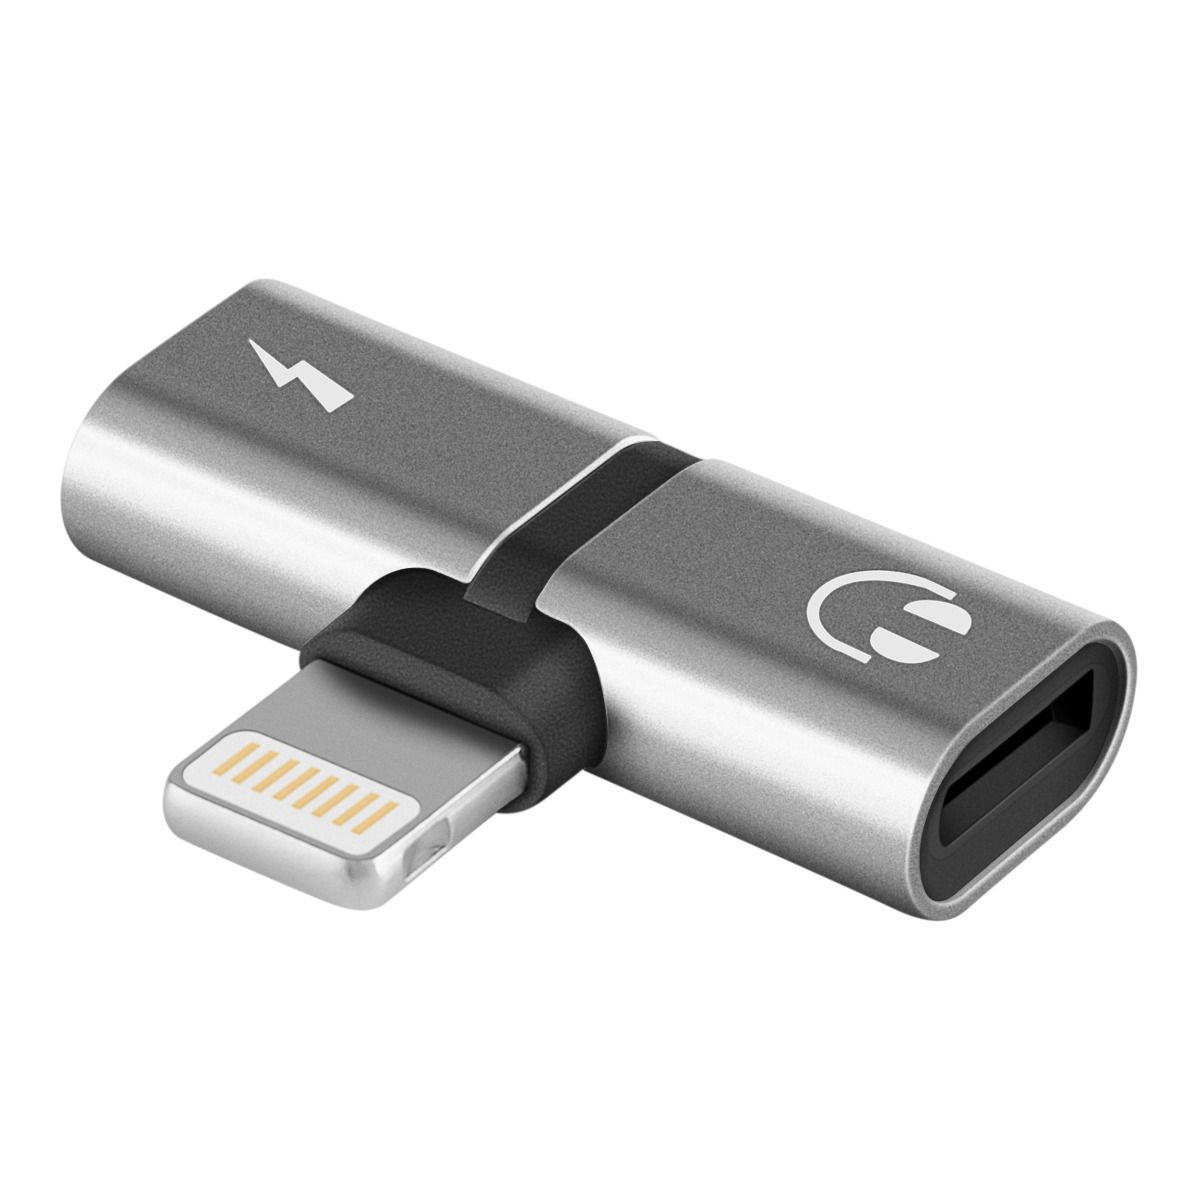 Cargador USB Doble para Auto marca Steren.